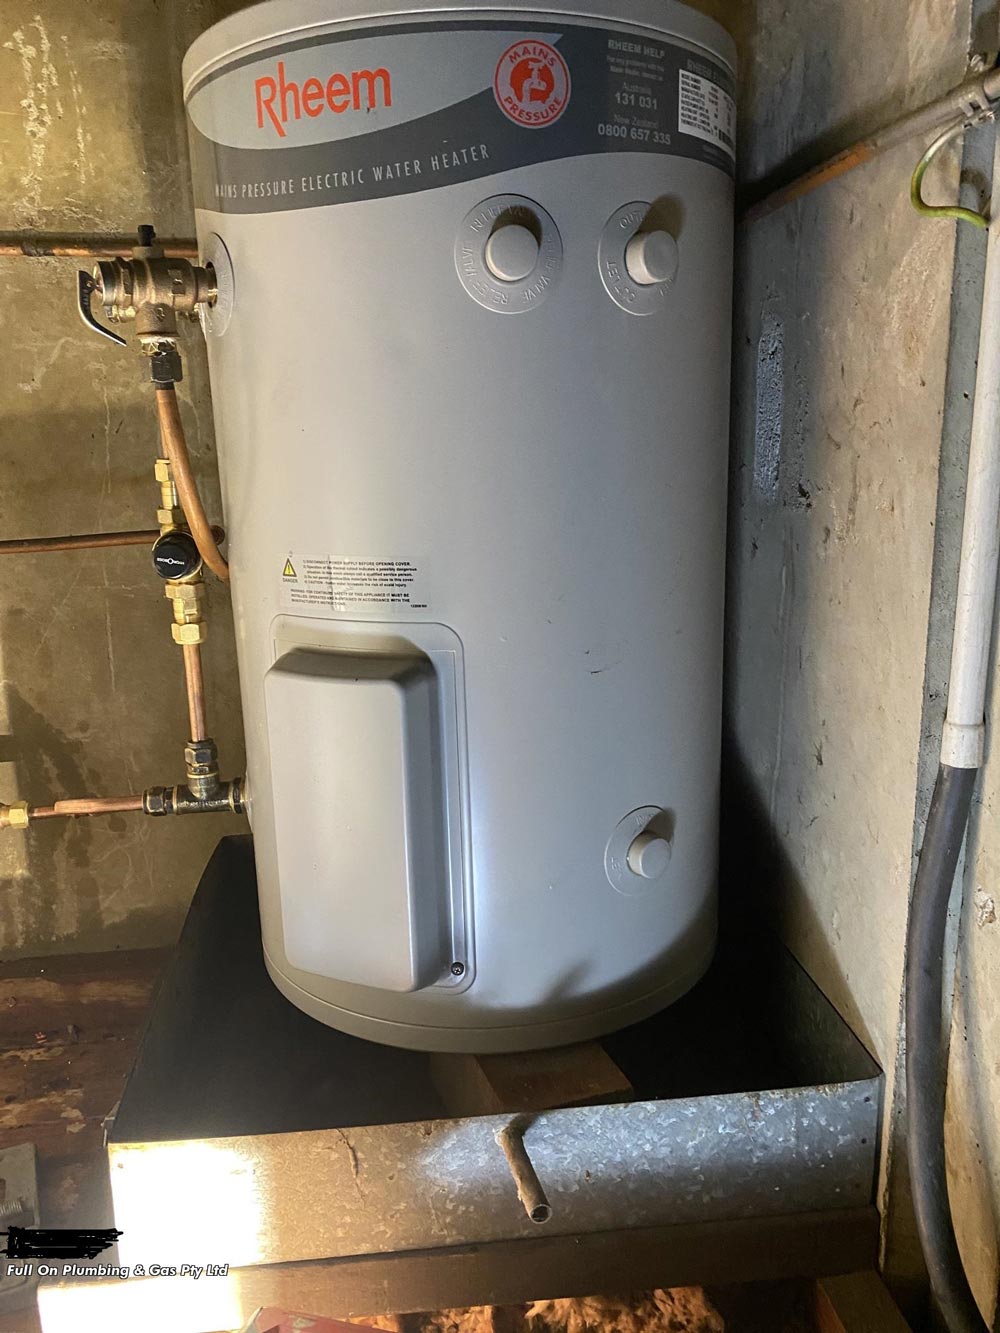 Rheem Electric water Heater — Full On Plumbing & Gas In Winnellie NT